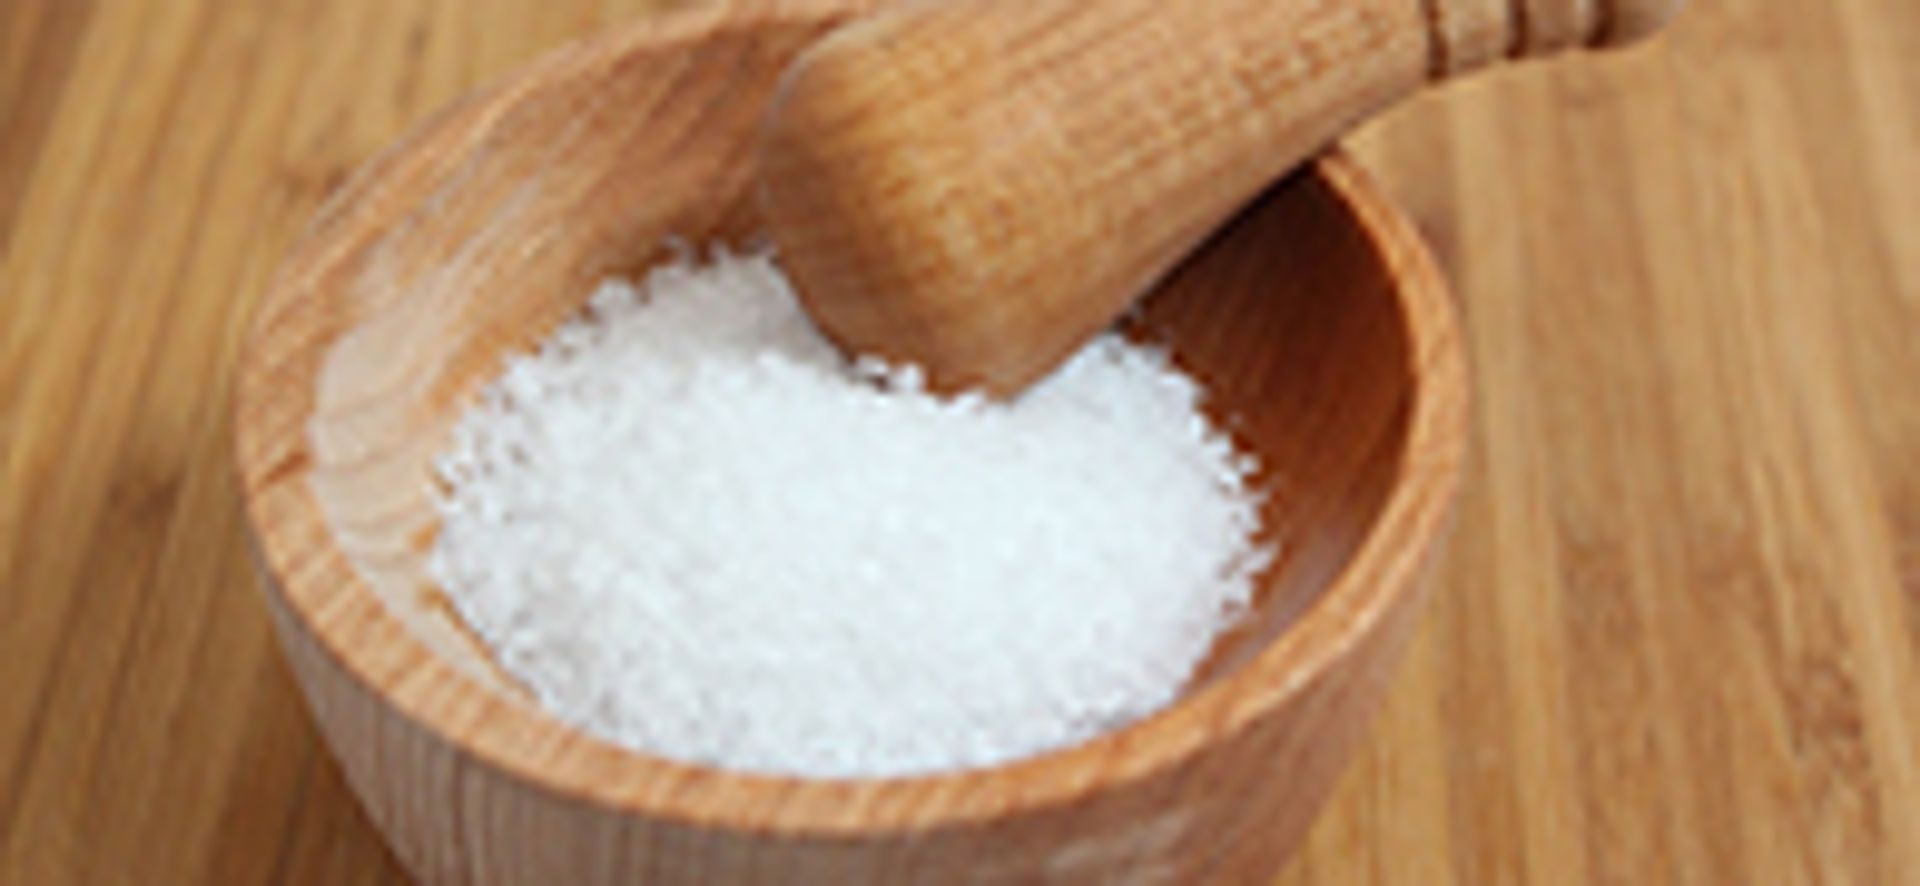 Hoe zit het nou met zout in je voeding?